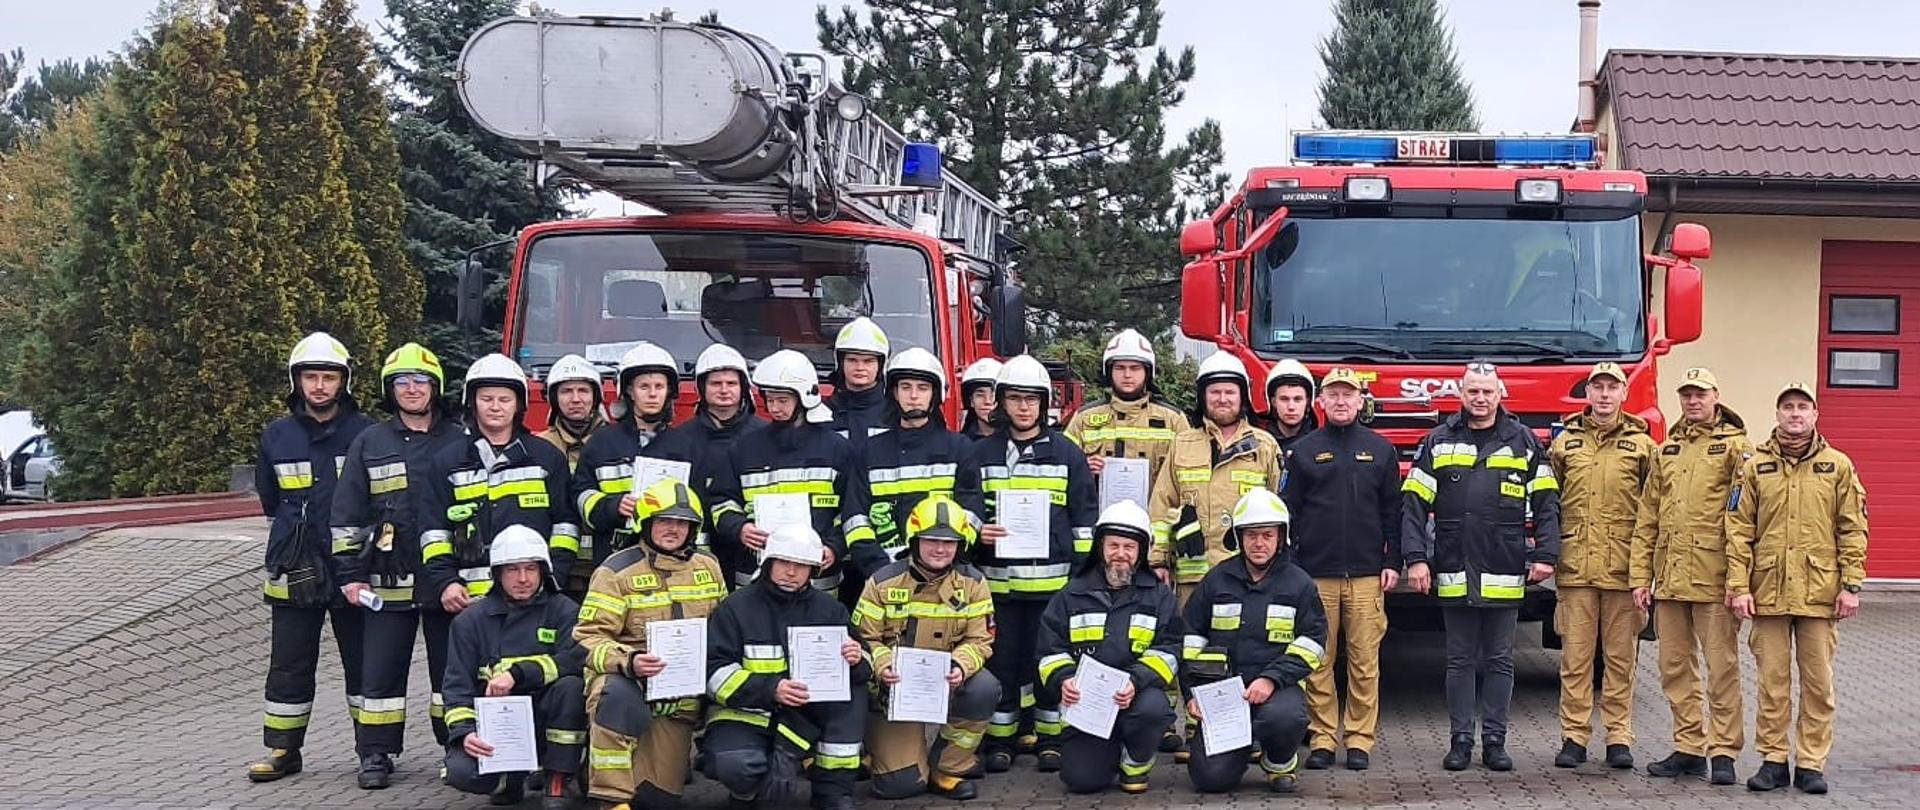 Zdjęcie przedstawia zbiórkę strażaków OSP w umundurowaniu specjalnym wraz z funkcjonariuszami z PSP nadzorującymi szkolenie oraz Prezesem Zarządu Oddziału Powiatowego ZOSP RP. Zbiórka jest zrealizowana na tle samochodów pożarniczych SCD z JRG Zduńska Wola oraz GCBA z OSP Zapolice.